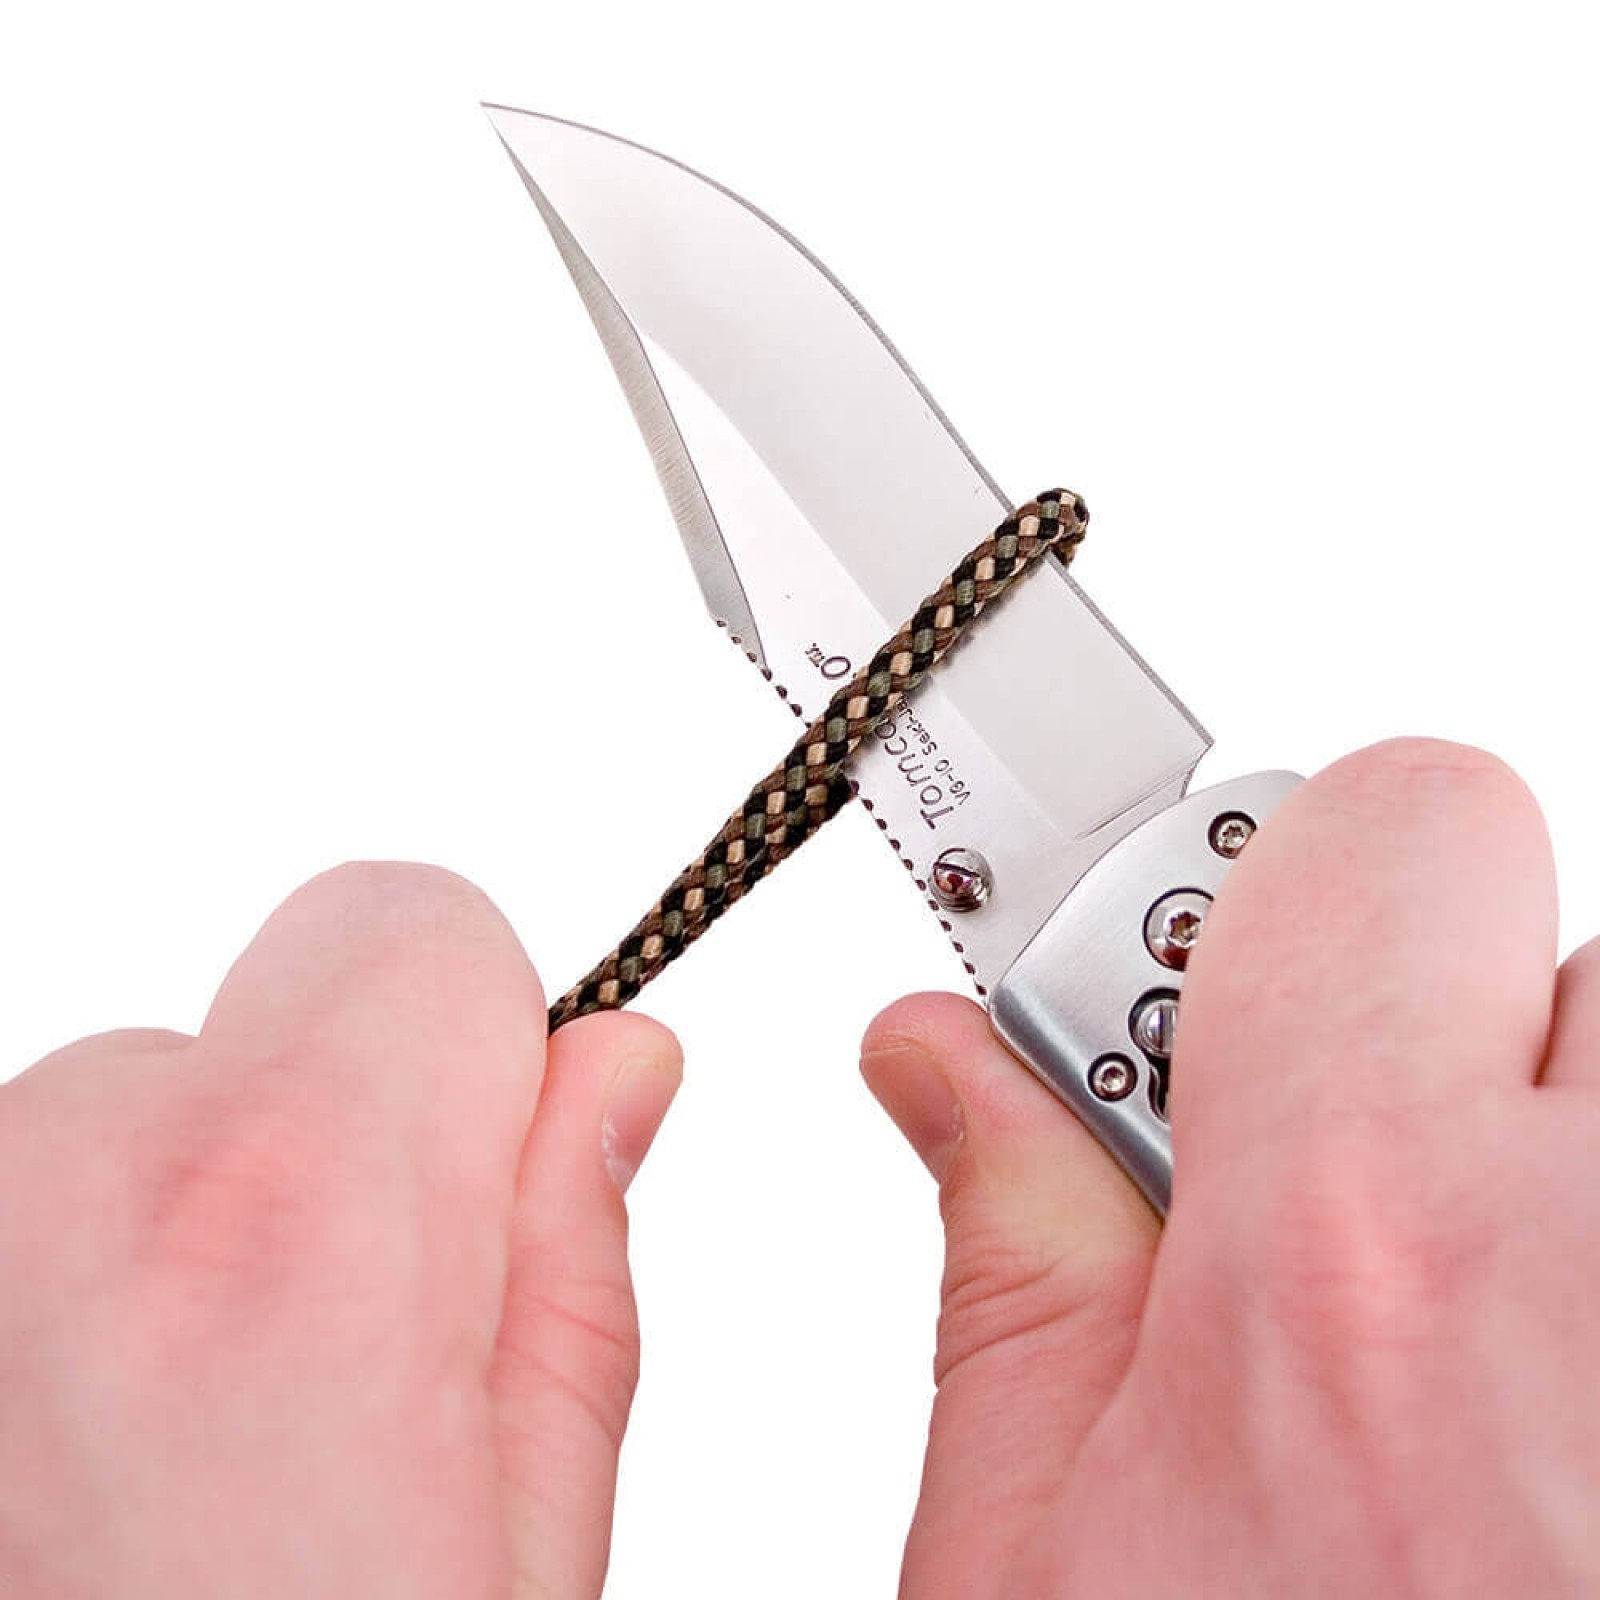 Складной нож Tomcat 3.0 - SOG S95, сталь VG-10, рукоять кратон - фото 9